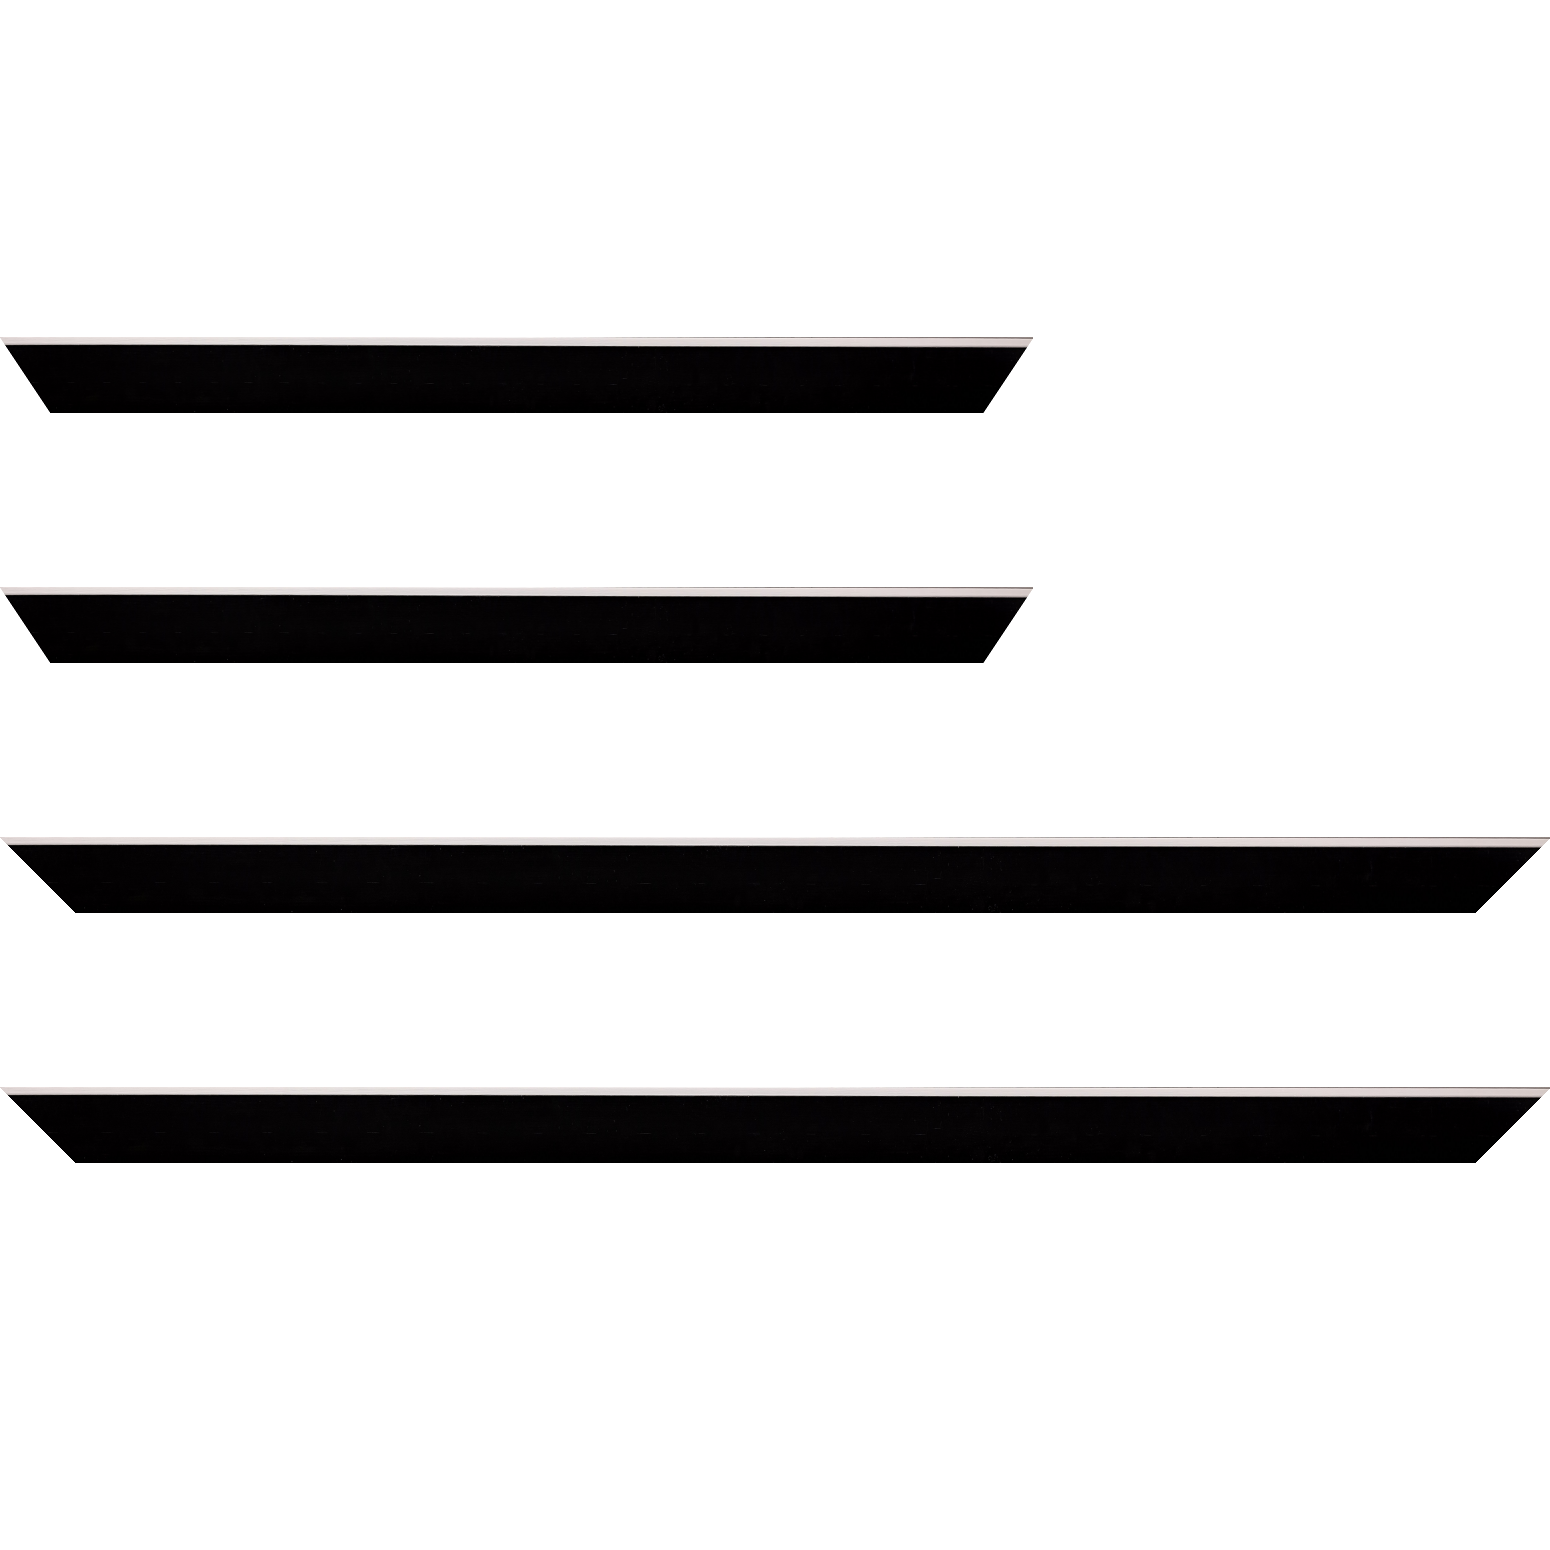 Baguette service précoupé bois profil arrondi en pente plongeant largeur 2.4cm couleur noir satiné,veine du bois  apparent (pin) , angle du cadre extérieur filet argent chromé